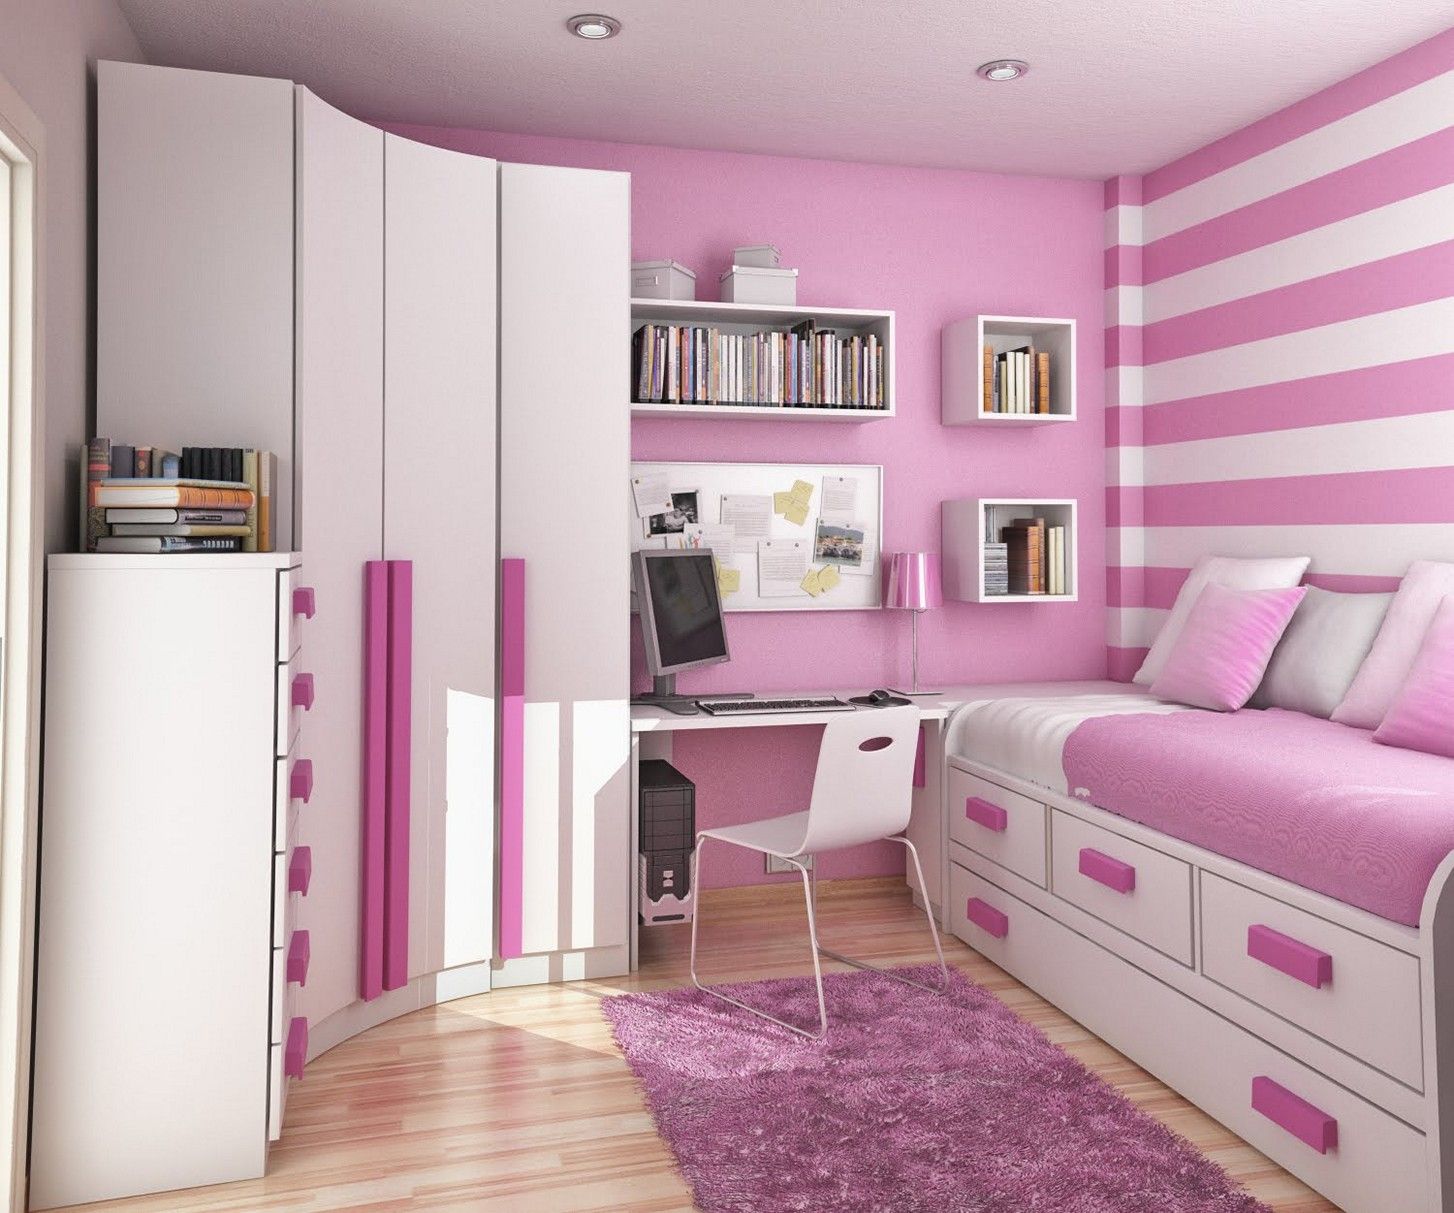 Phòng ngủ nhỏ 5m2 được thiết kế màu hồng